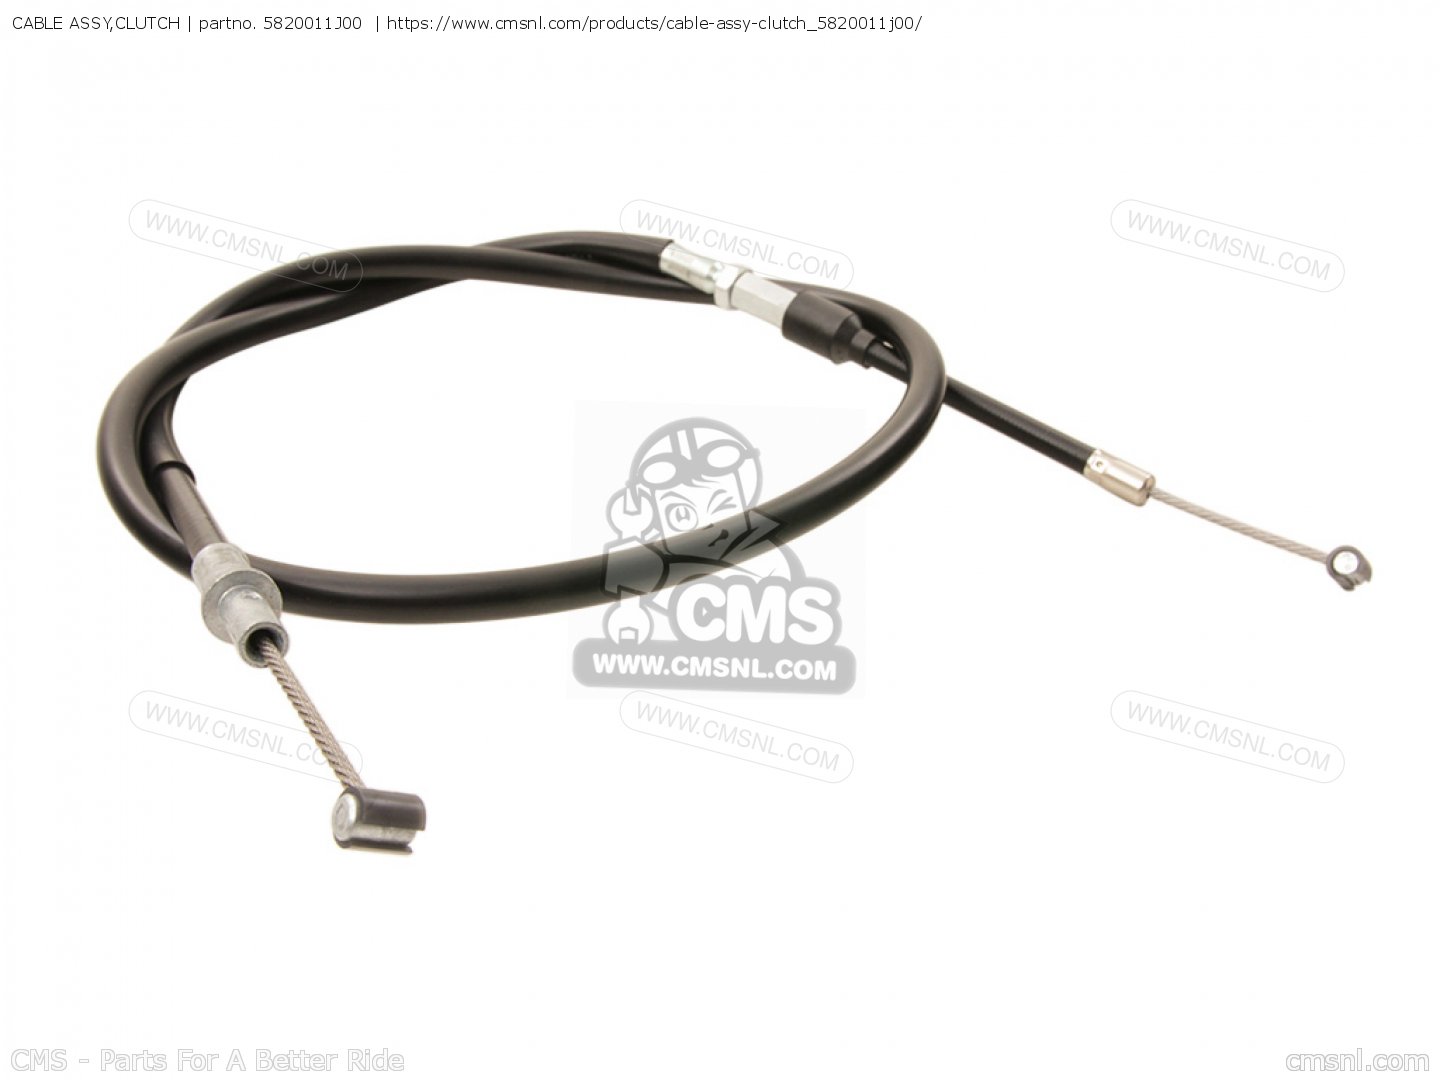 SUZUKI Cable Assy,clutch 58200-13A03 OEM